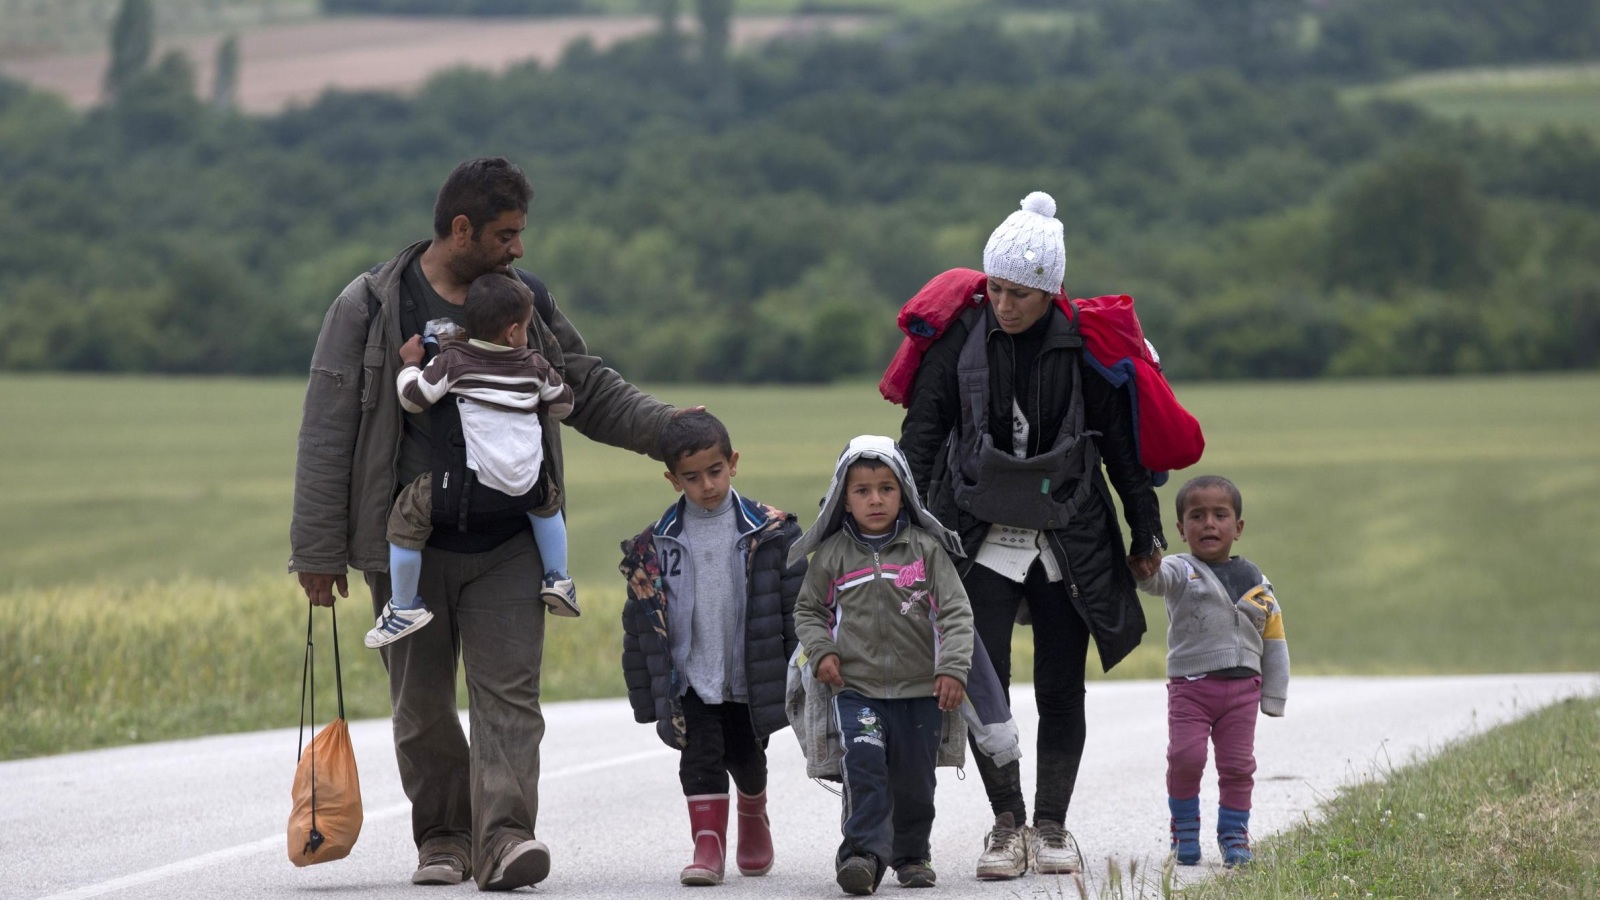 عائلة تغادر معسكر إيدوميني للاجئين شمال اليونان سيرا على الأقدامرويترز)